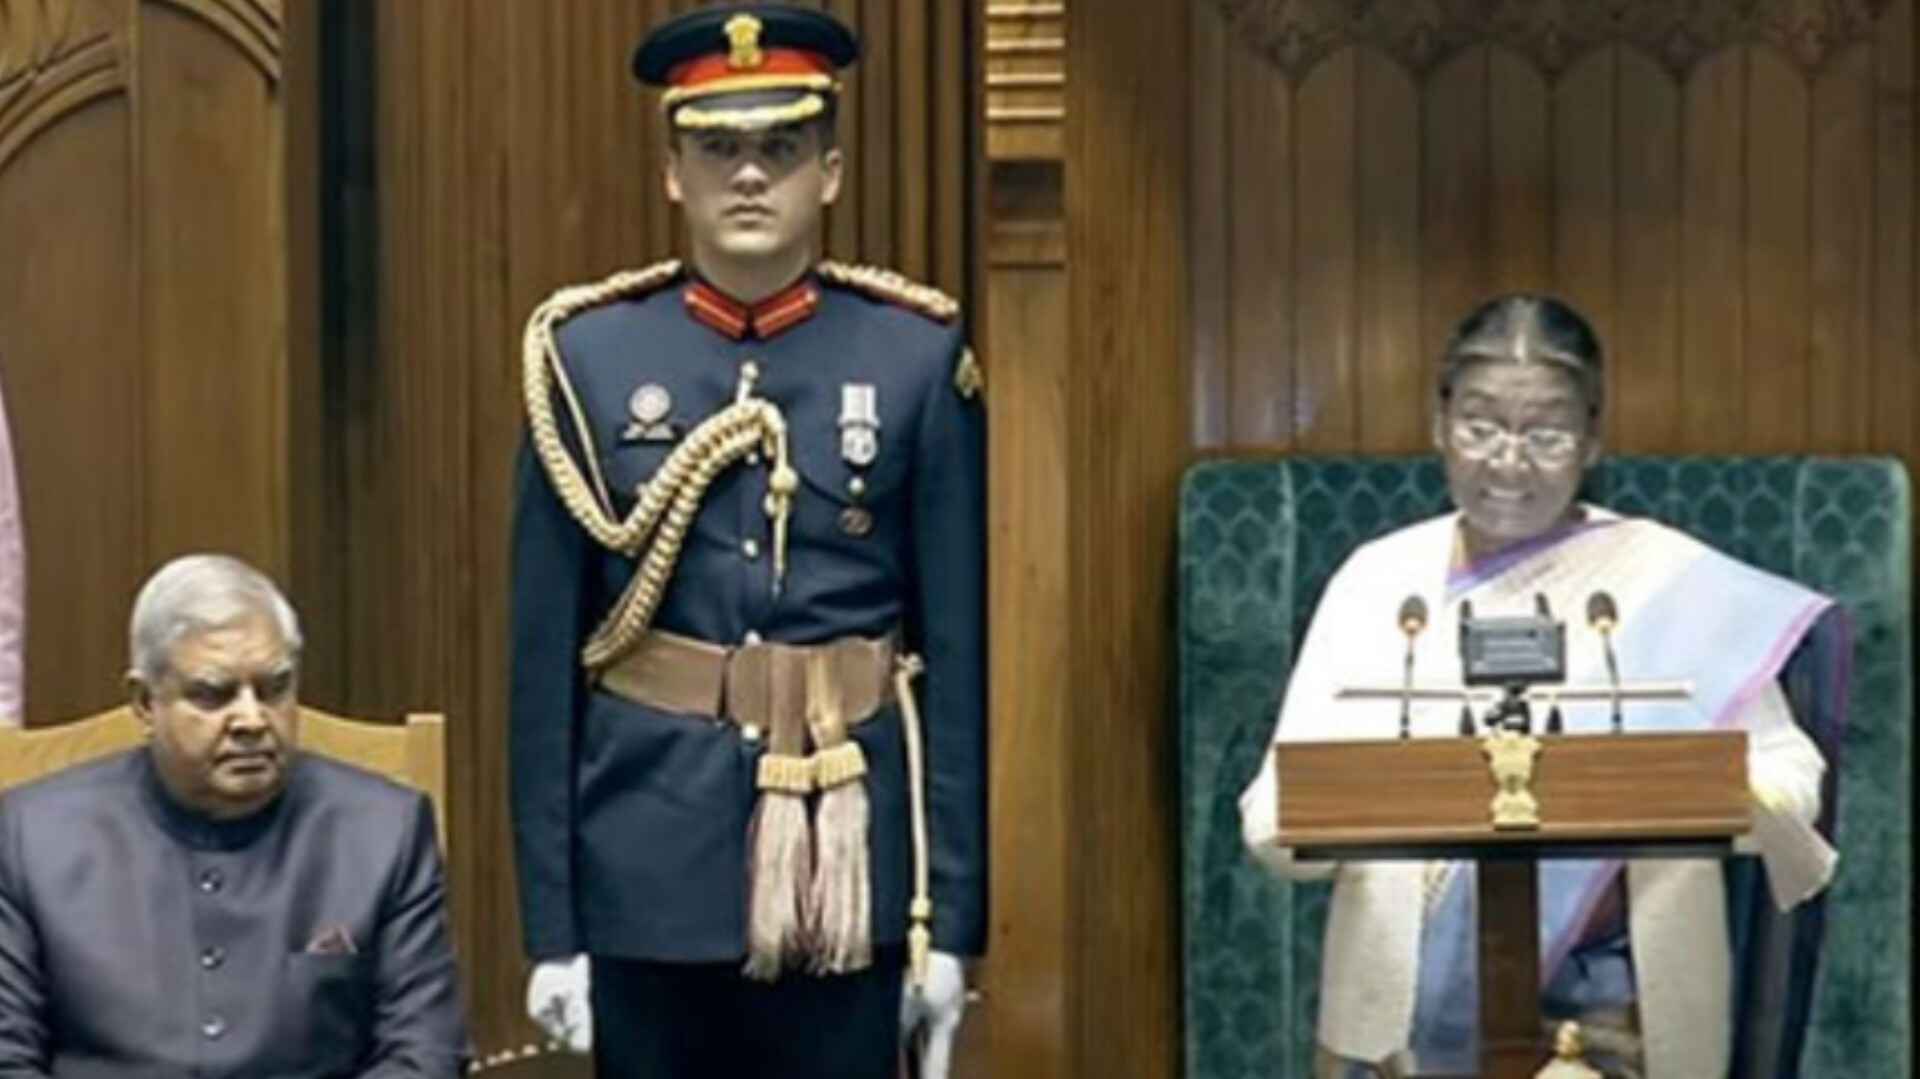 संसद का बजट सत्र शुरू, राष्ट्रपति मुर्मू ने अपने संबोधन में मोदी सरकार की सफलताओं को लेकर कही ये बातें